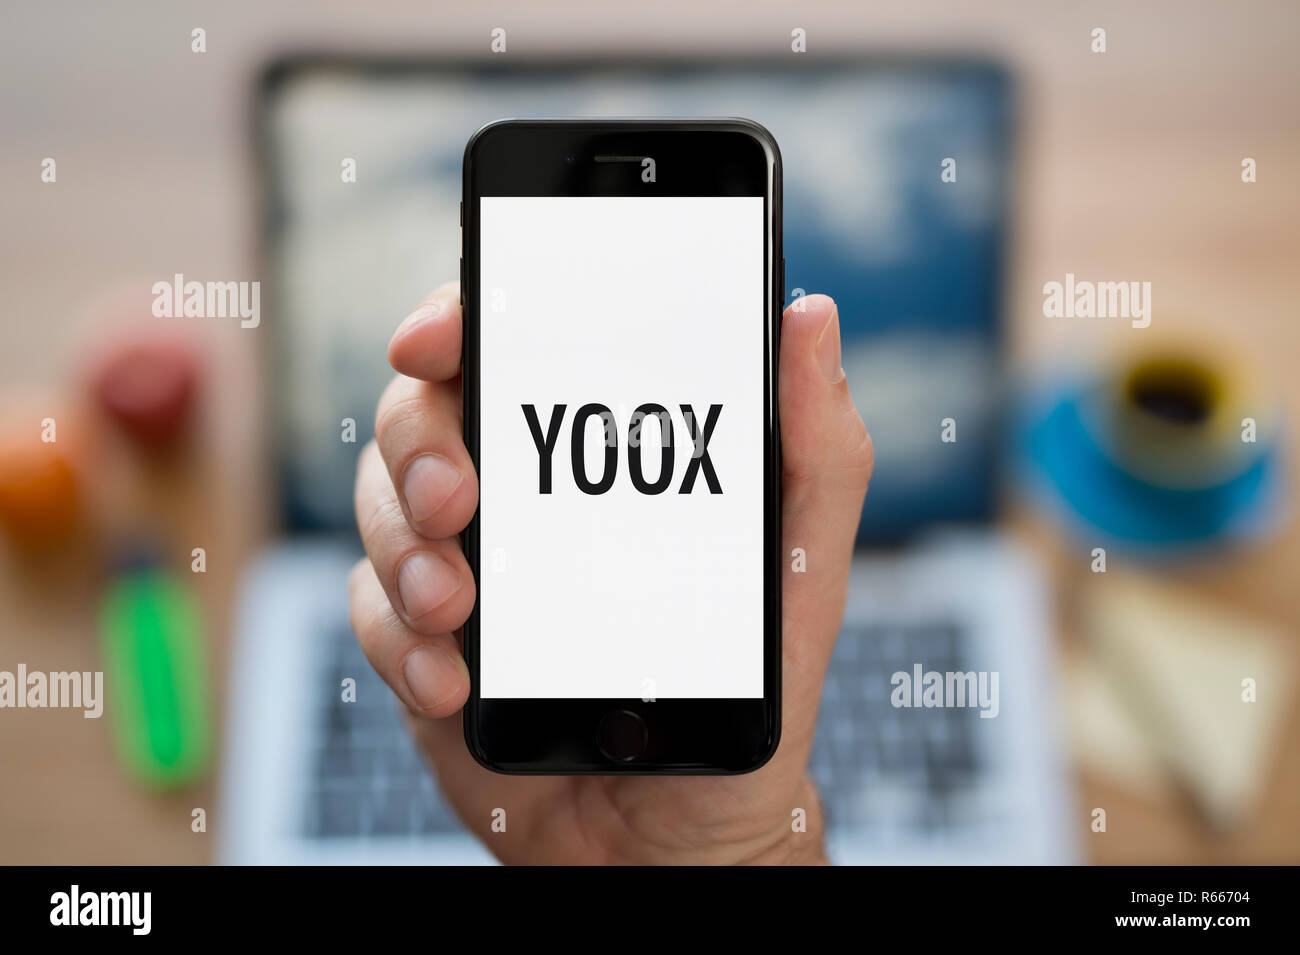 Yoox immagini e fotografie stock ad alta risoluzione - Alamy